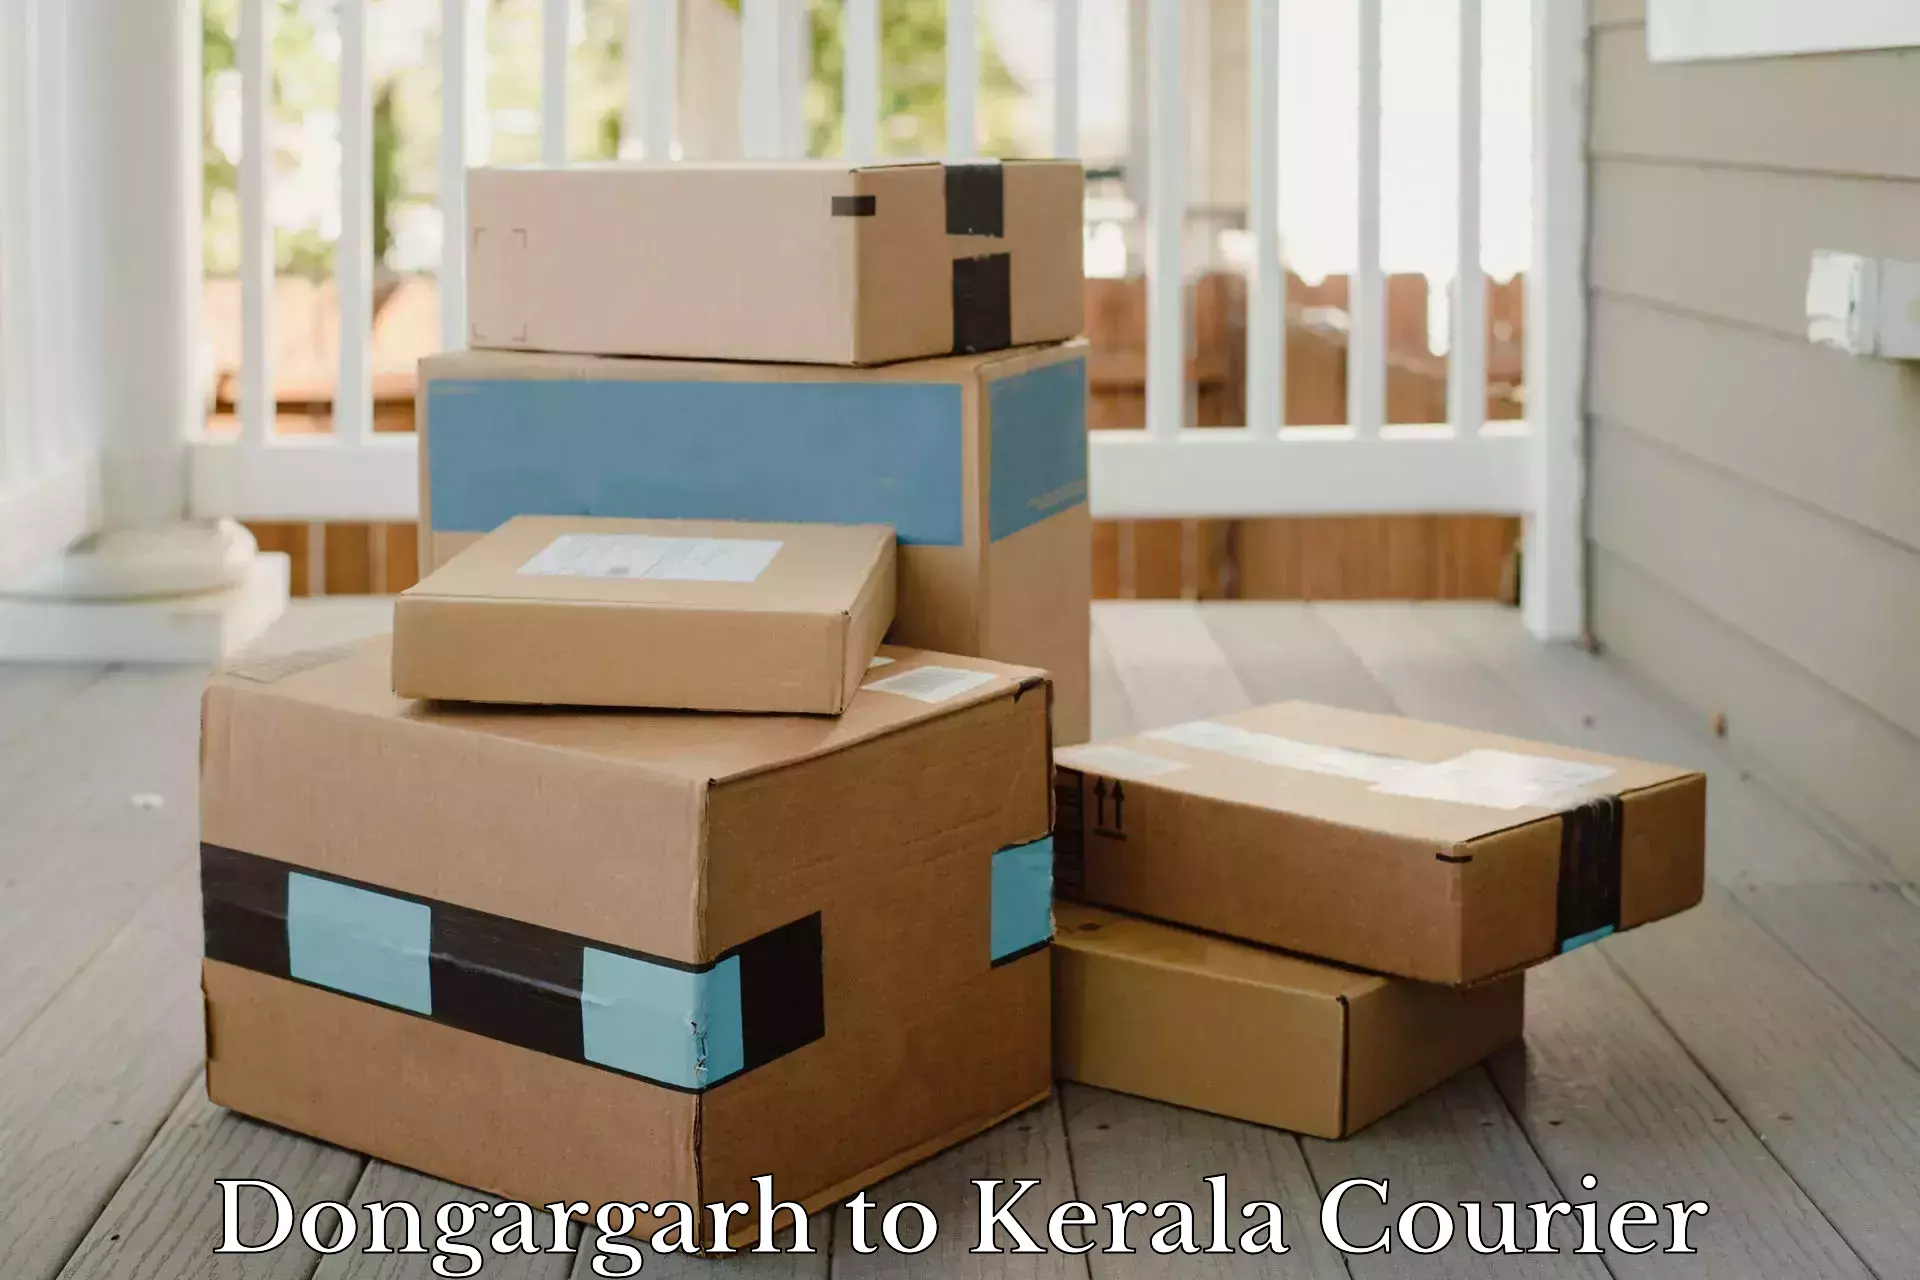 Door-to-door freight service Dongargarh to Kerala